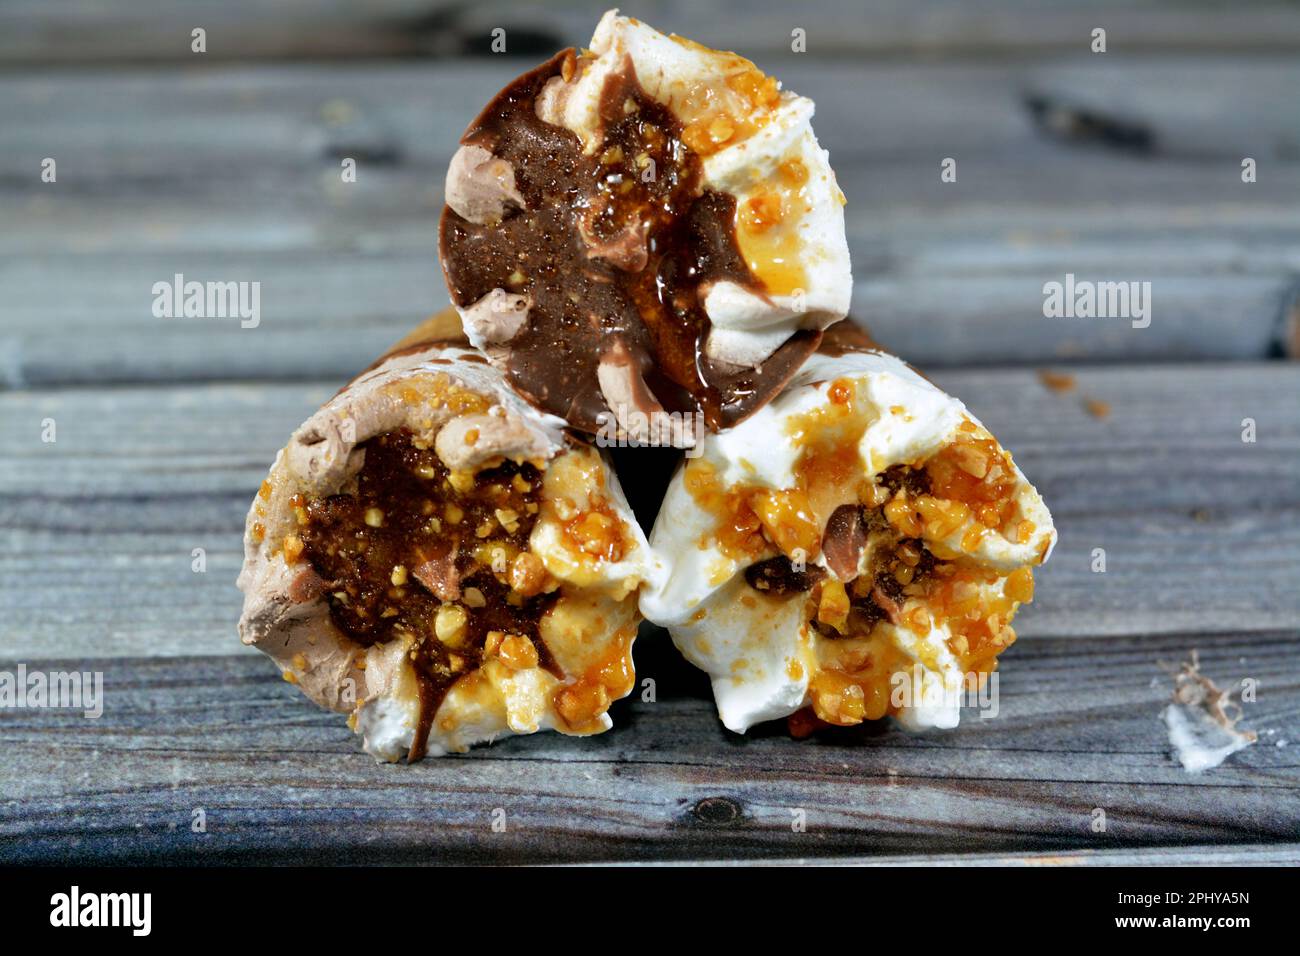 Eiscreme Vanille und Schokoladenzapfen mit Schokolade- und Karamellsoße und Nüssen in knusprigen Waffeln, Schmelzen von kaltem Eis in einem Stockfoto